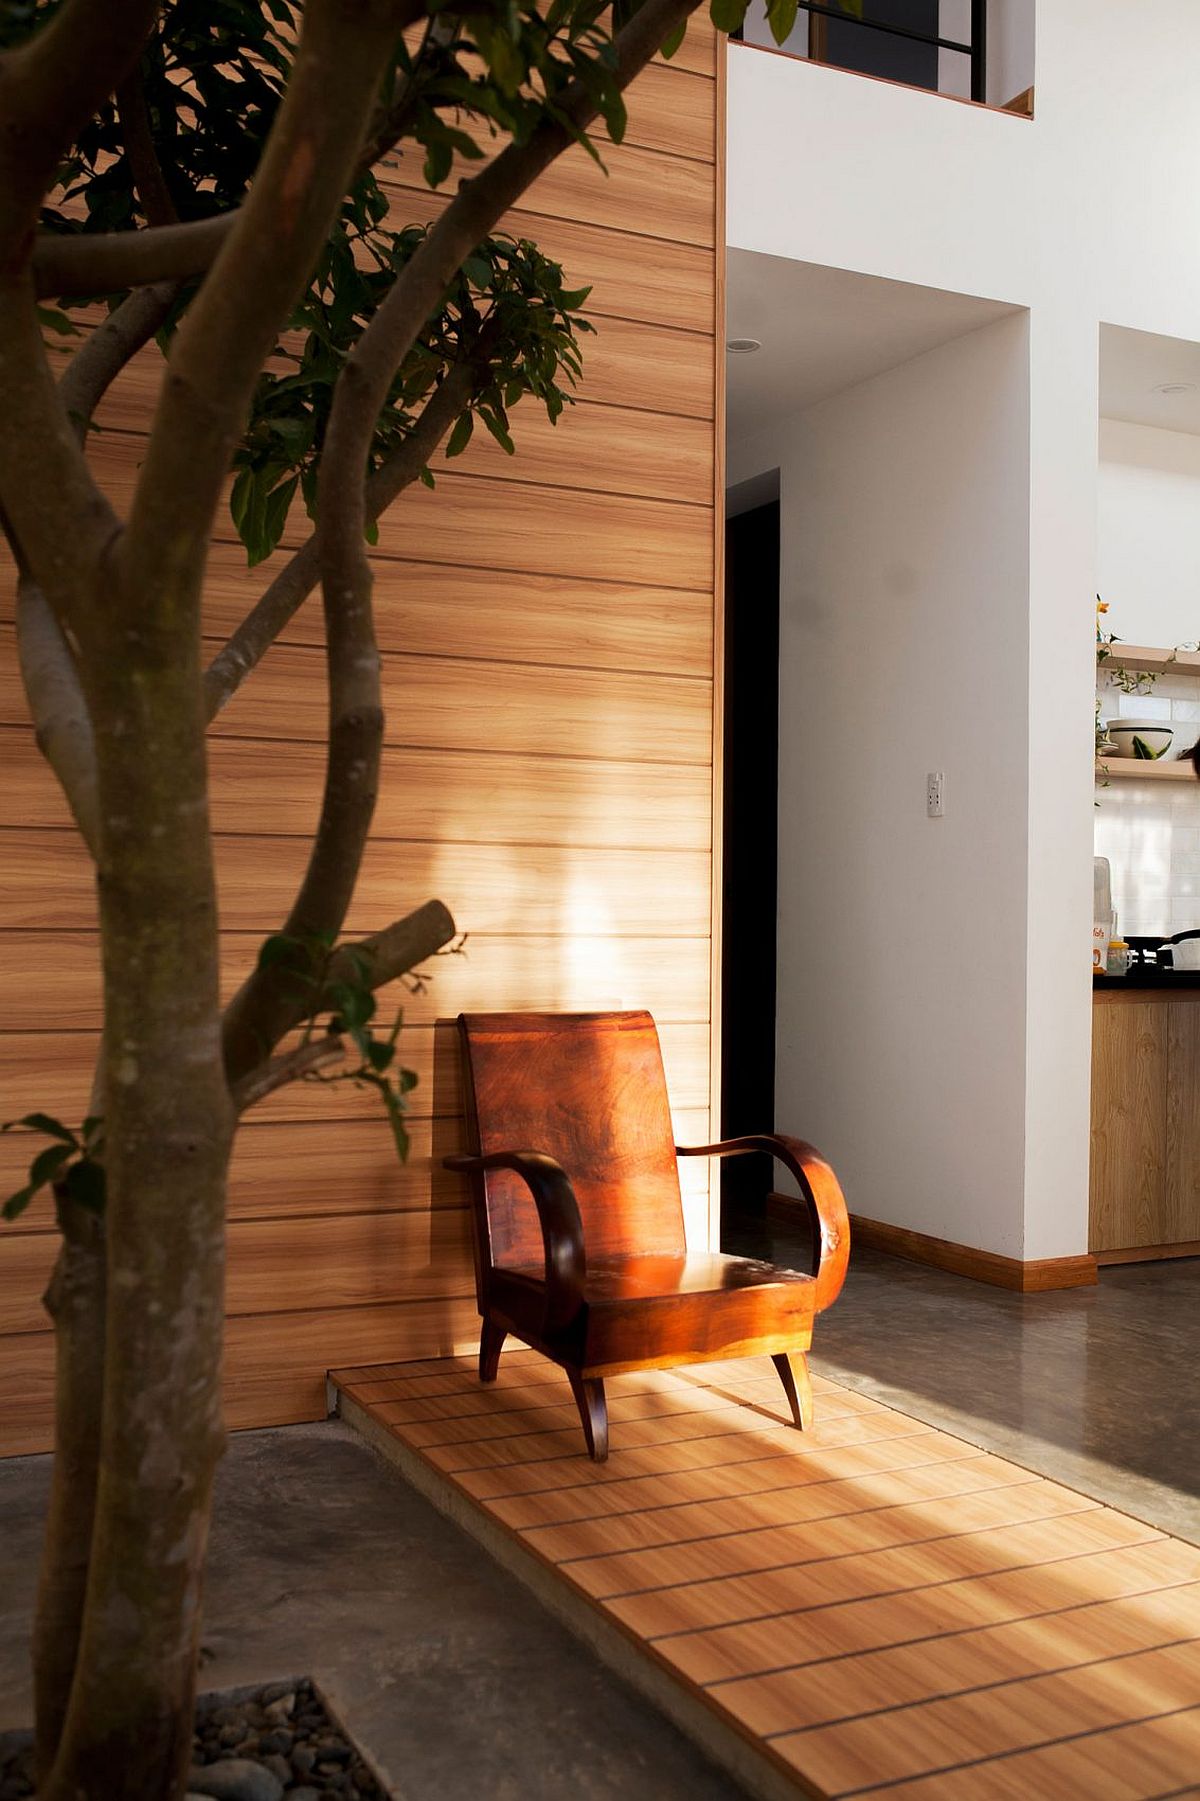 Zen-like meditative nook with indoor plant